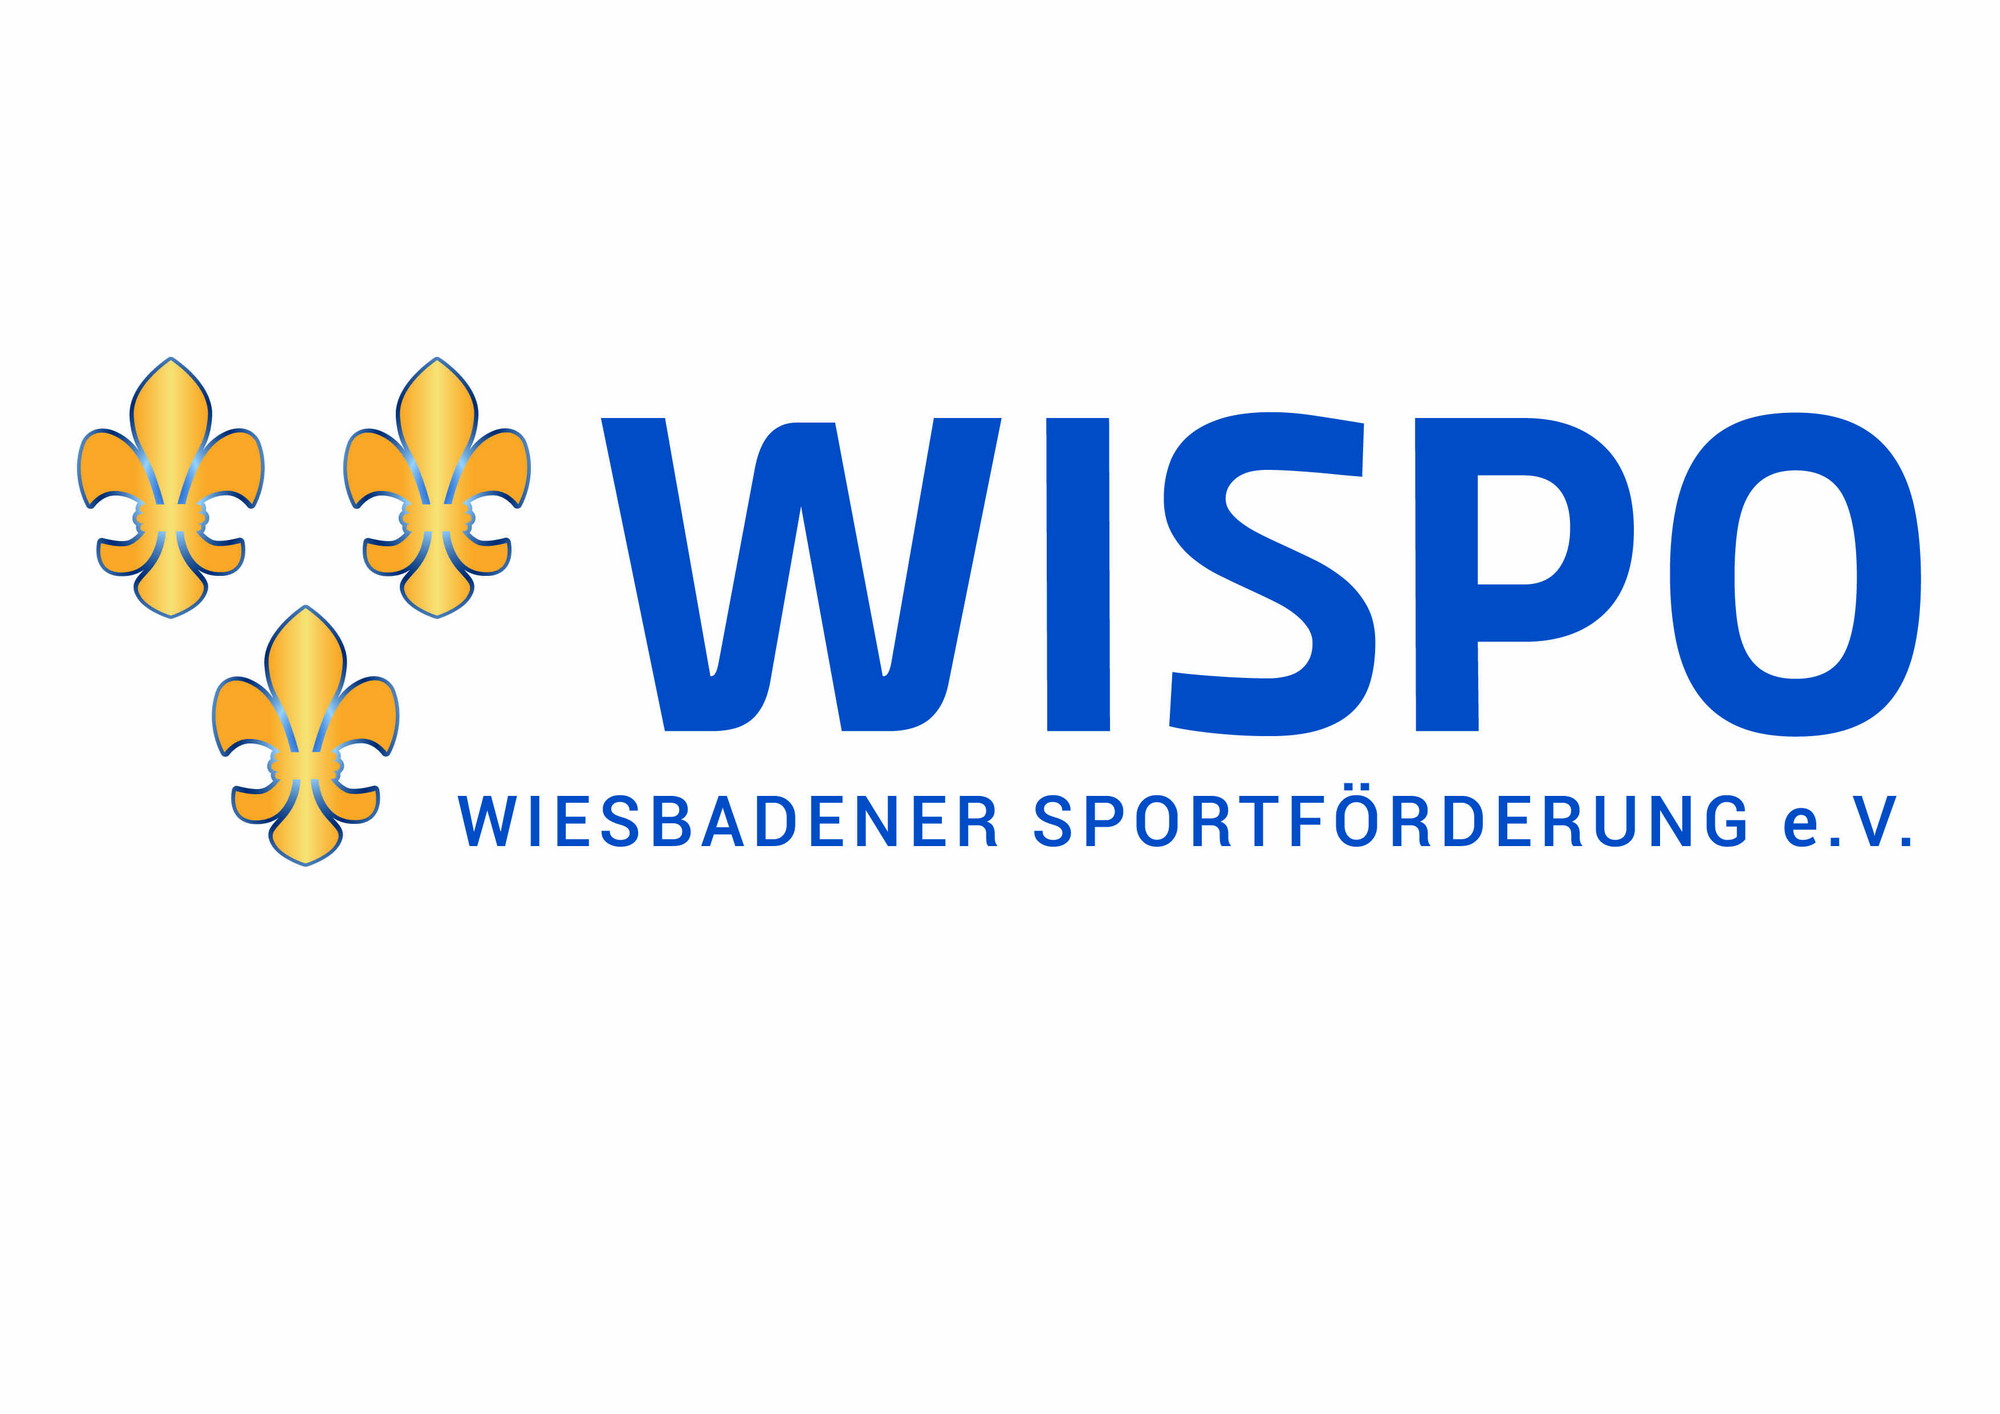 Wispo Wiesbadener Sportförderung e.V